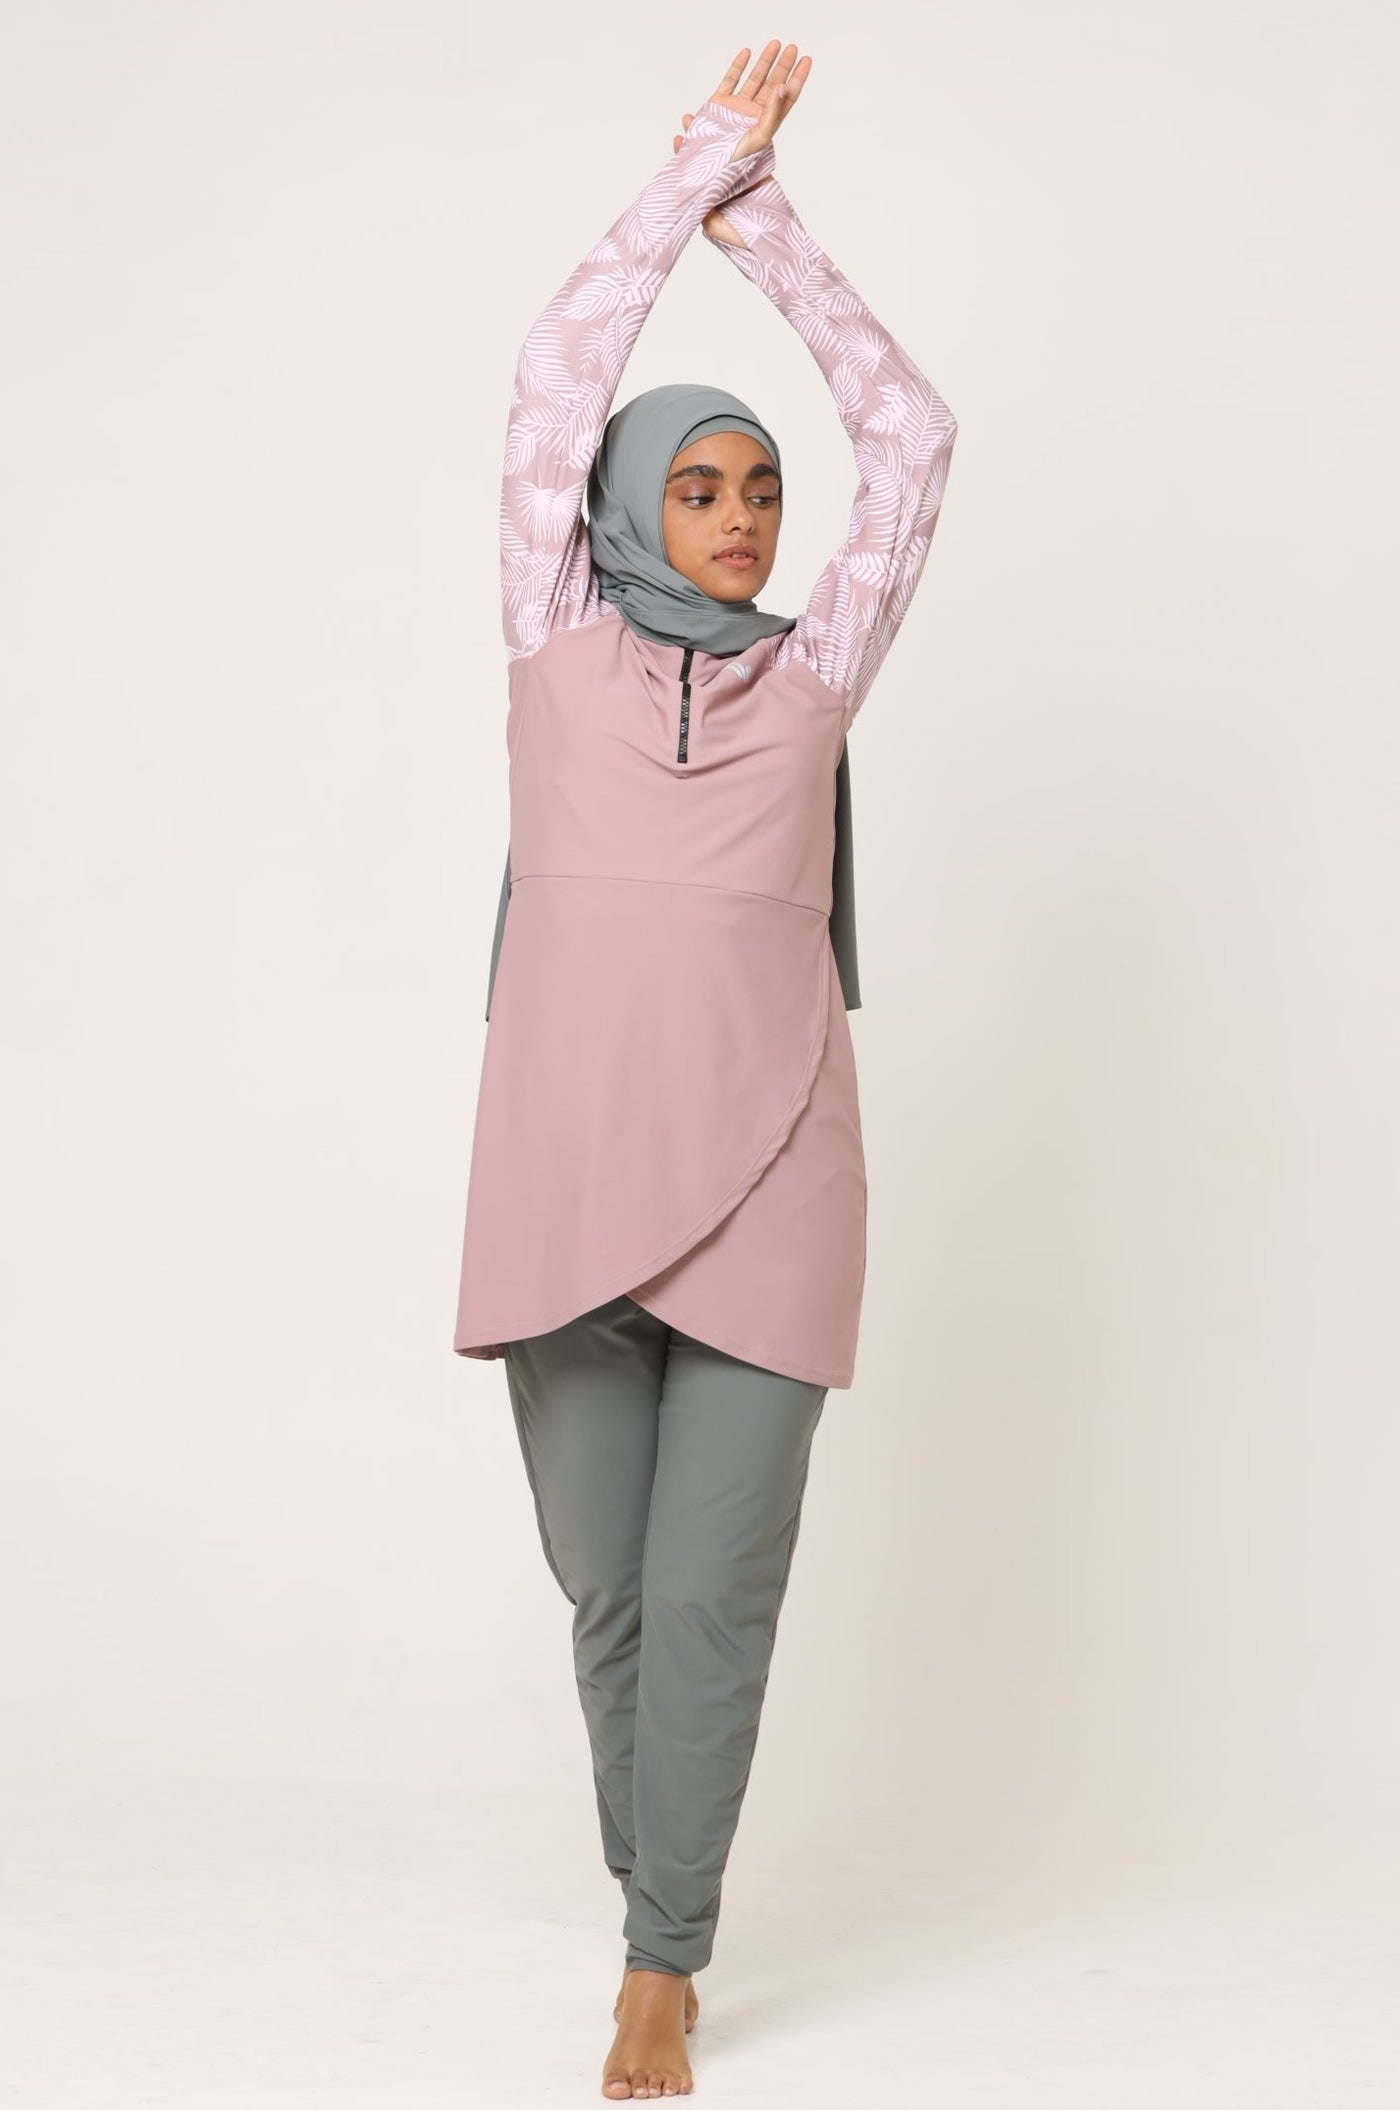 Girls Modest Activewear - Pink Sports Dress